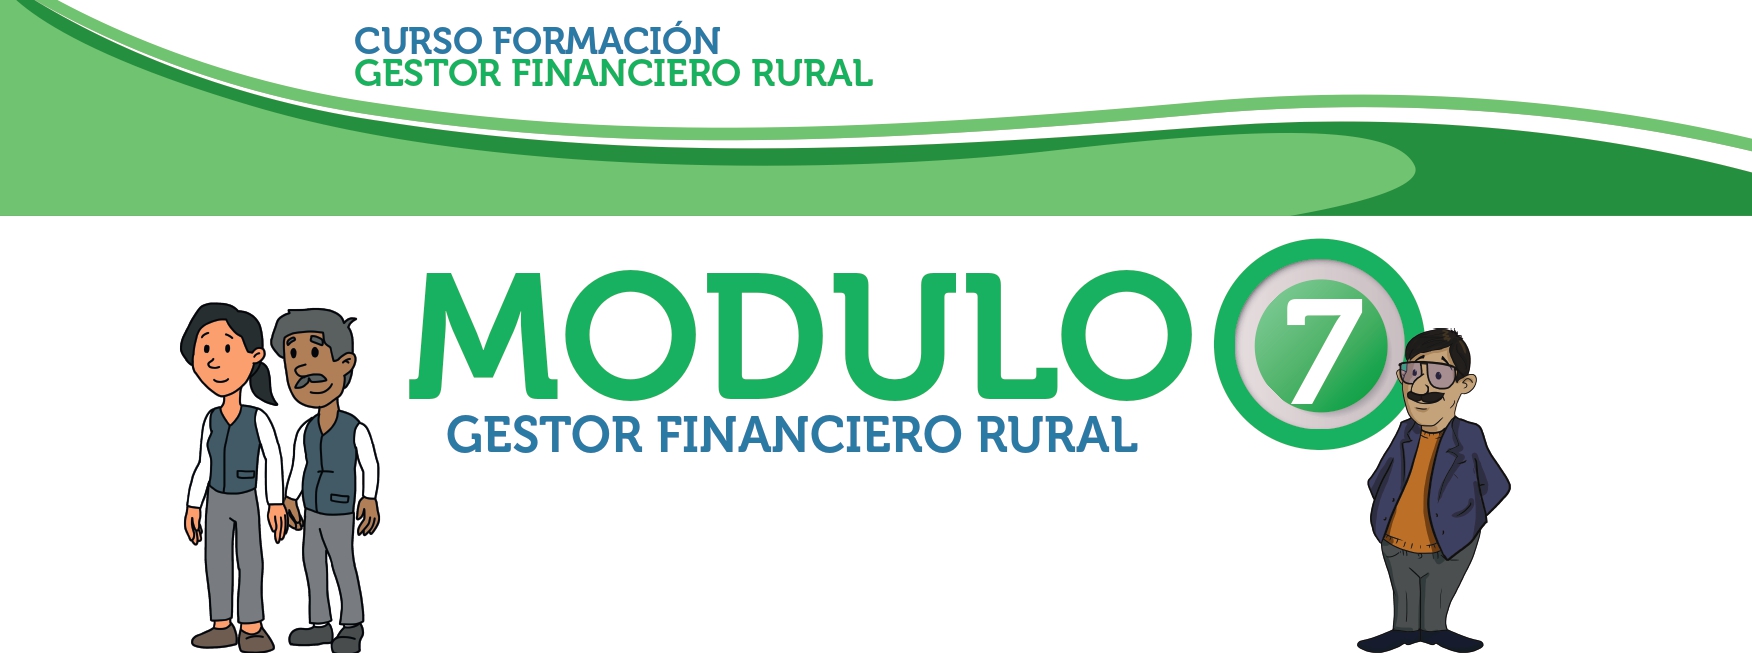 Módulo 7: Gestor Financiero Rural